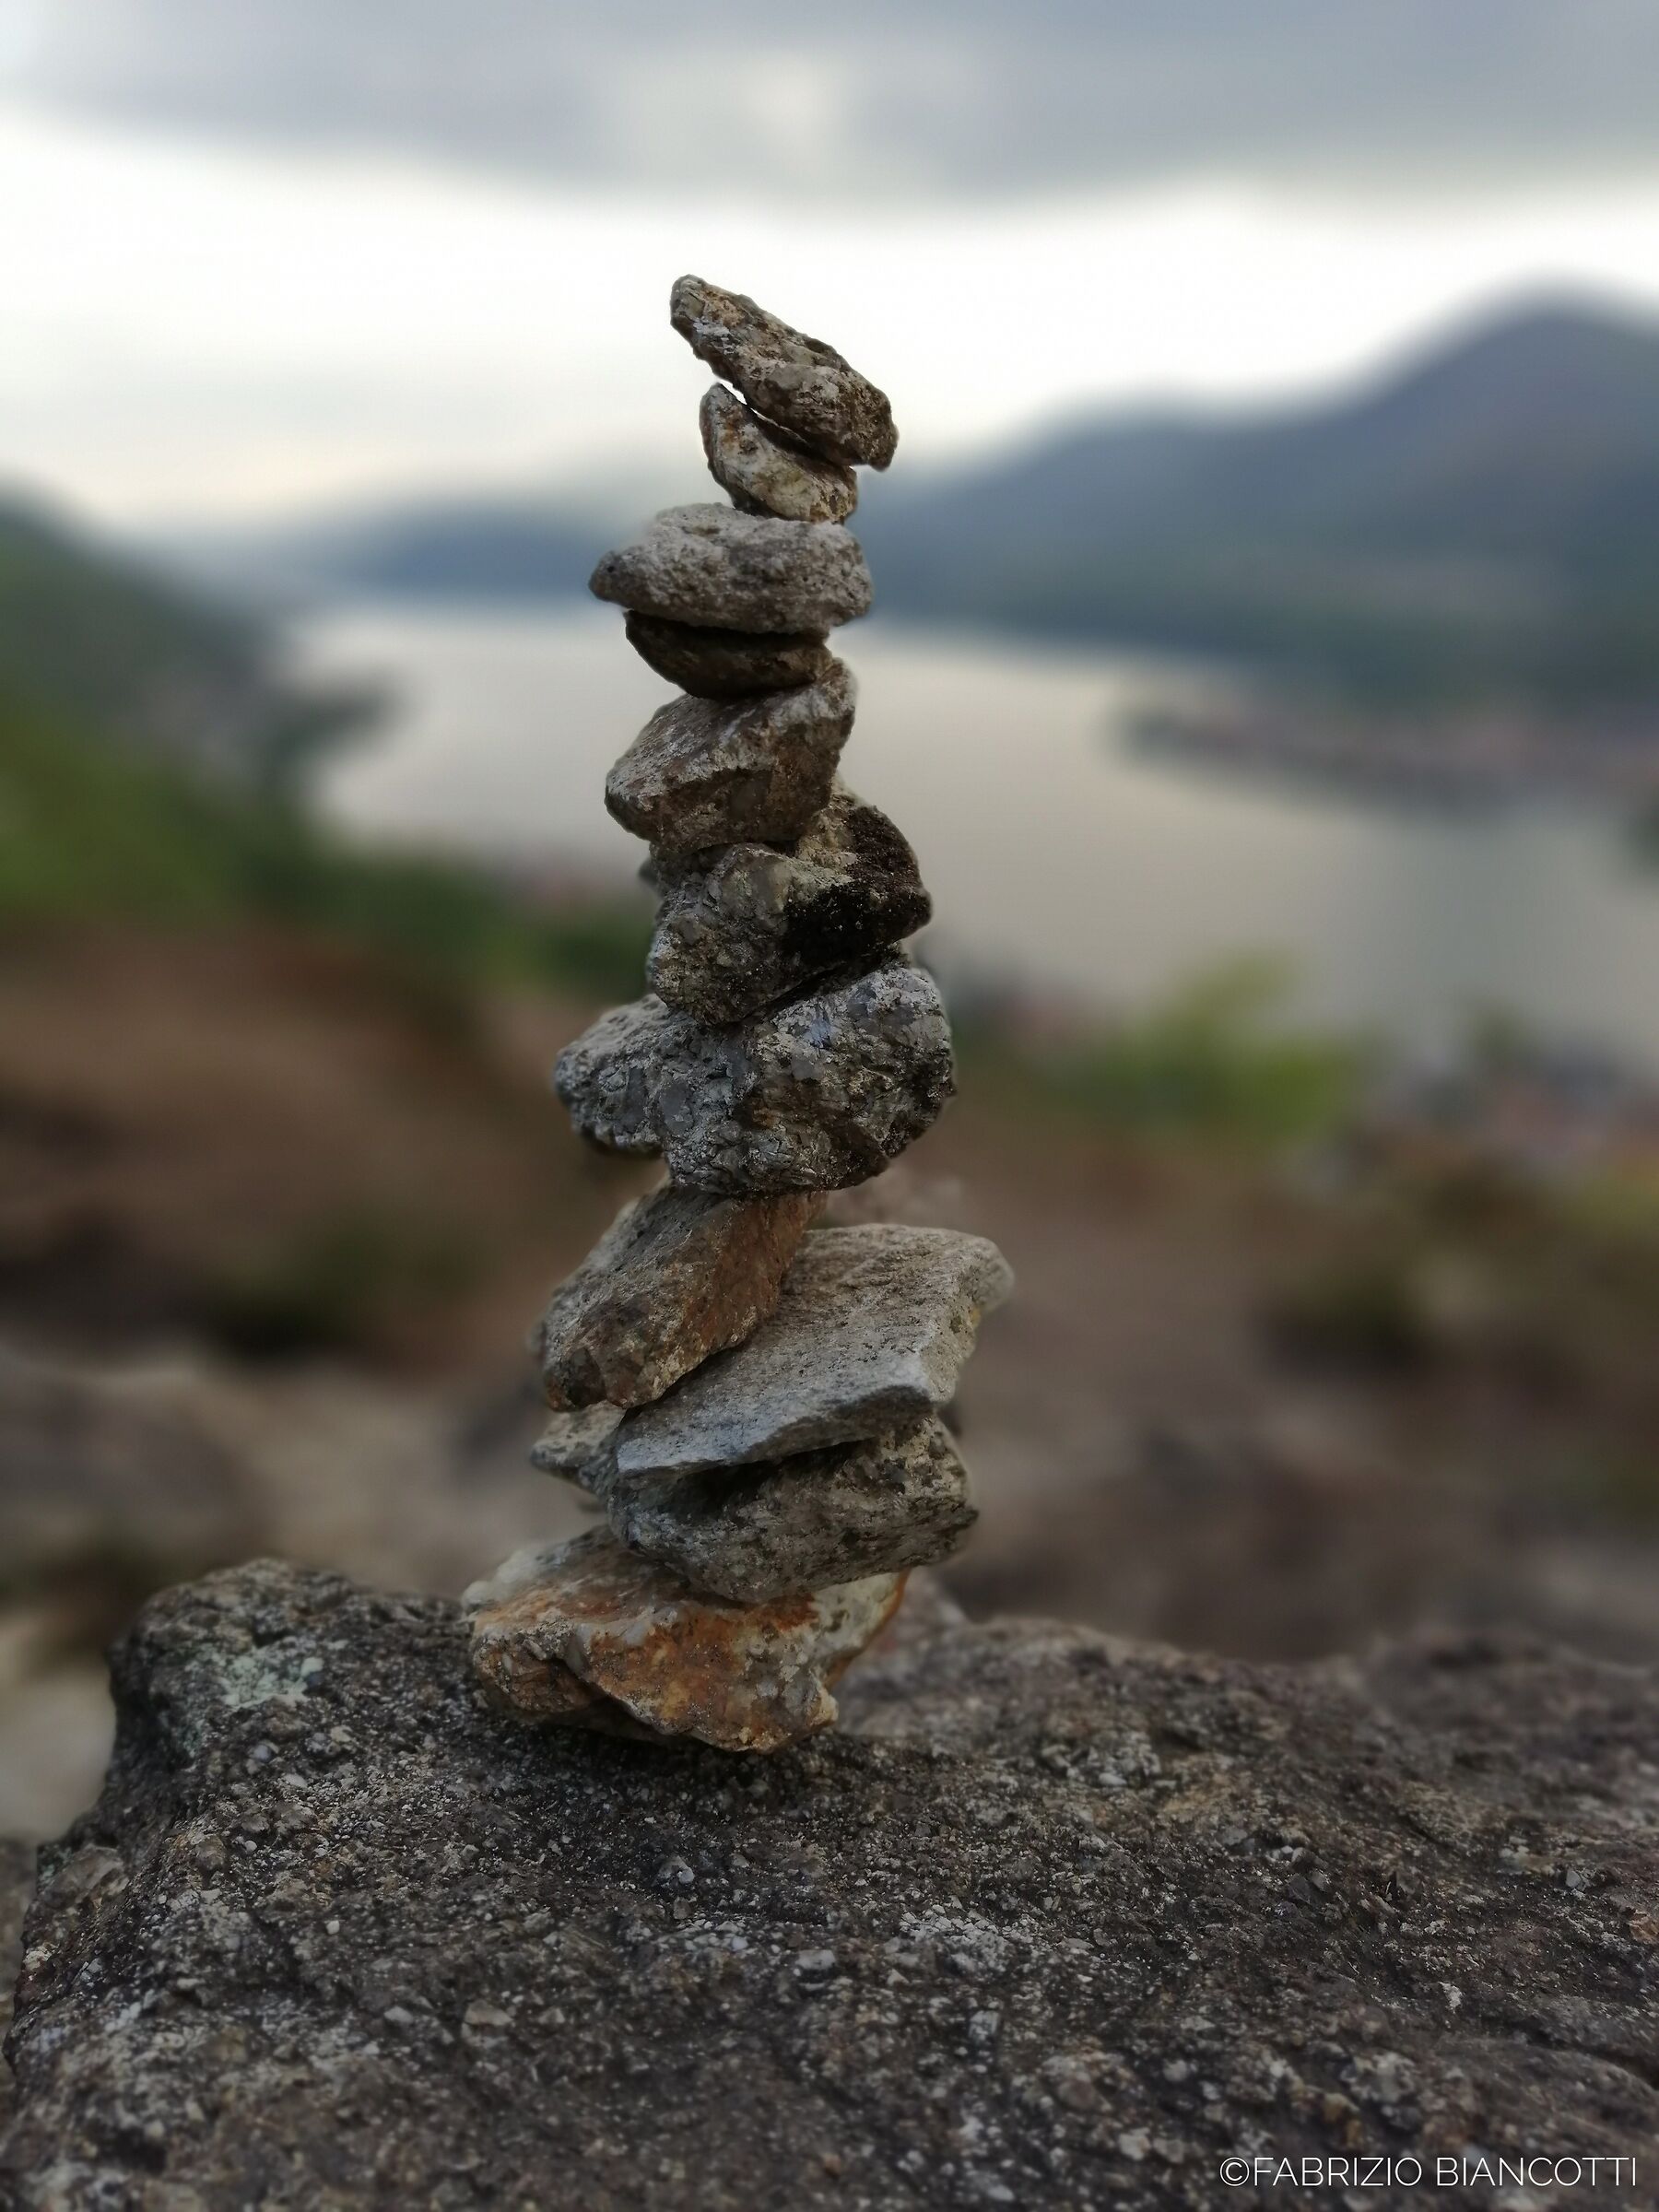 Always find your balance...